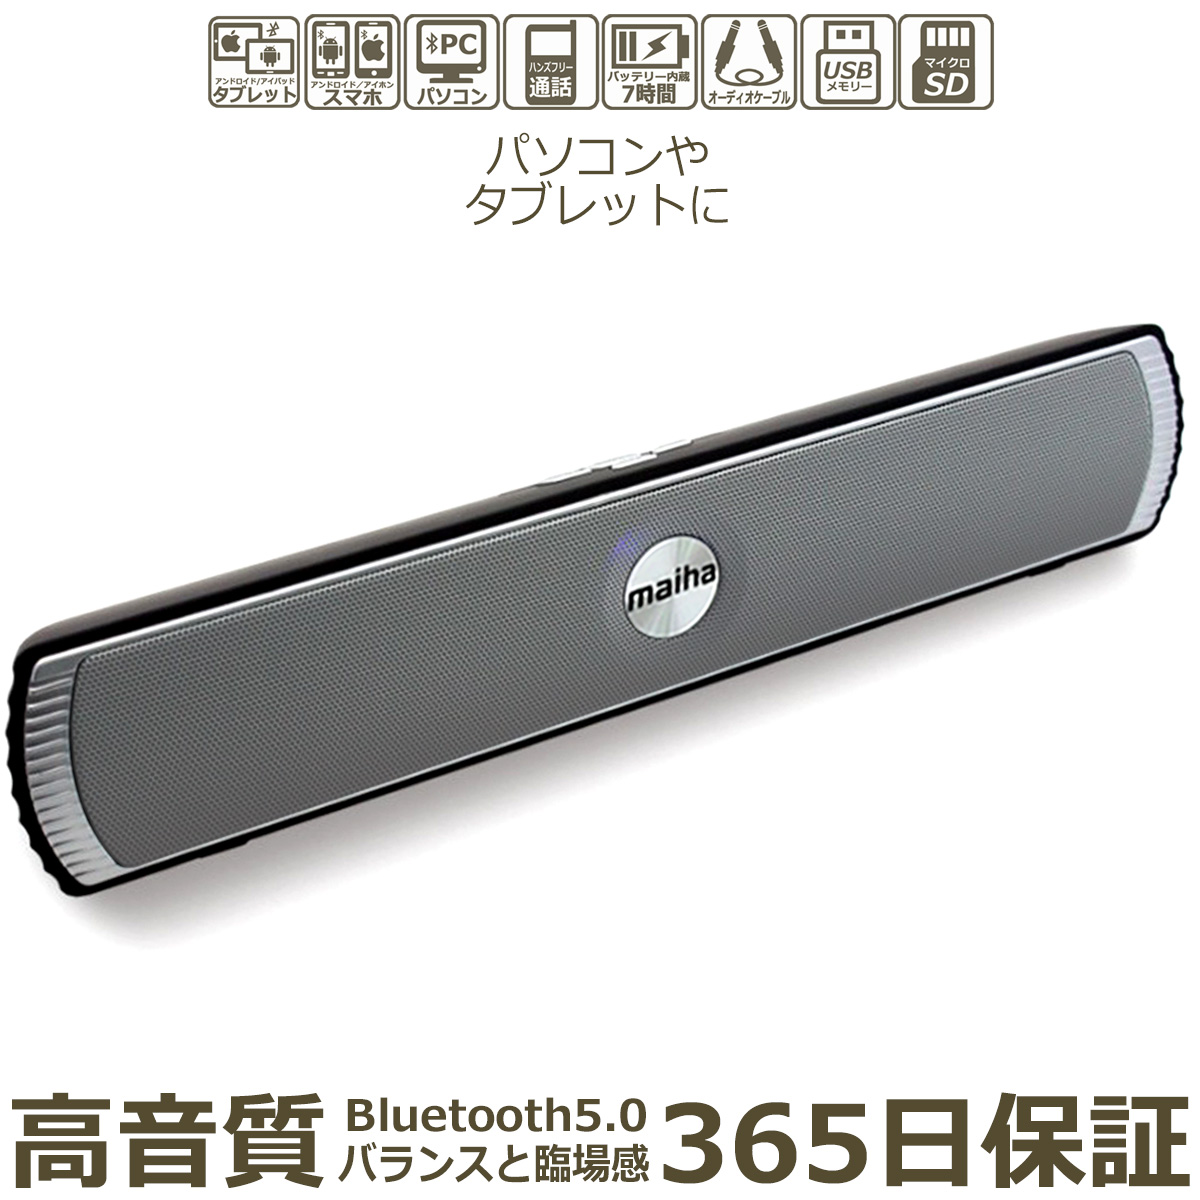 Bluetooth 5.0 スピーカー 小型 サウンドバー ブルートゥース ワイヤレス PC 横長 スピーカー ステレオ パソコン スマホ タブレット 無線 接続 マイクロ SD カード USBメモリー 音楽 再生 有線 AUX 端子 ハンズフリー通話